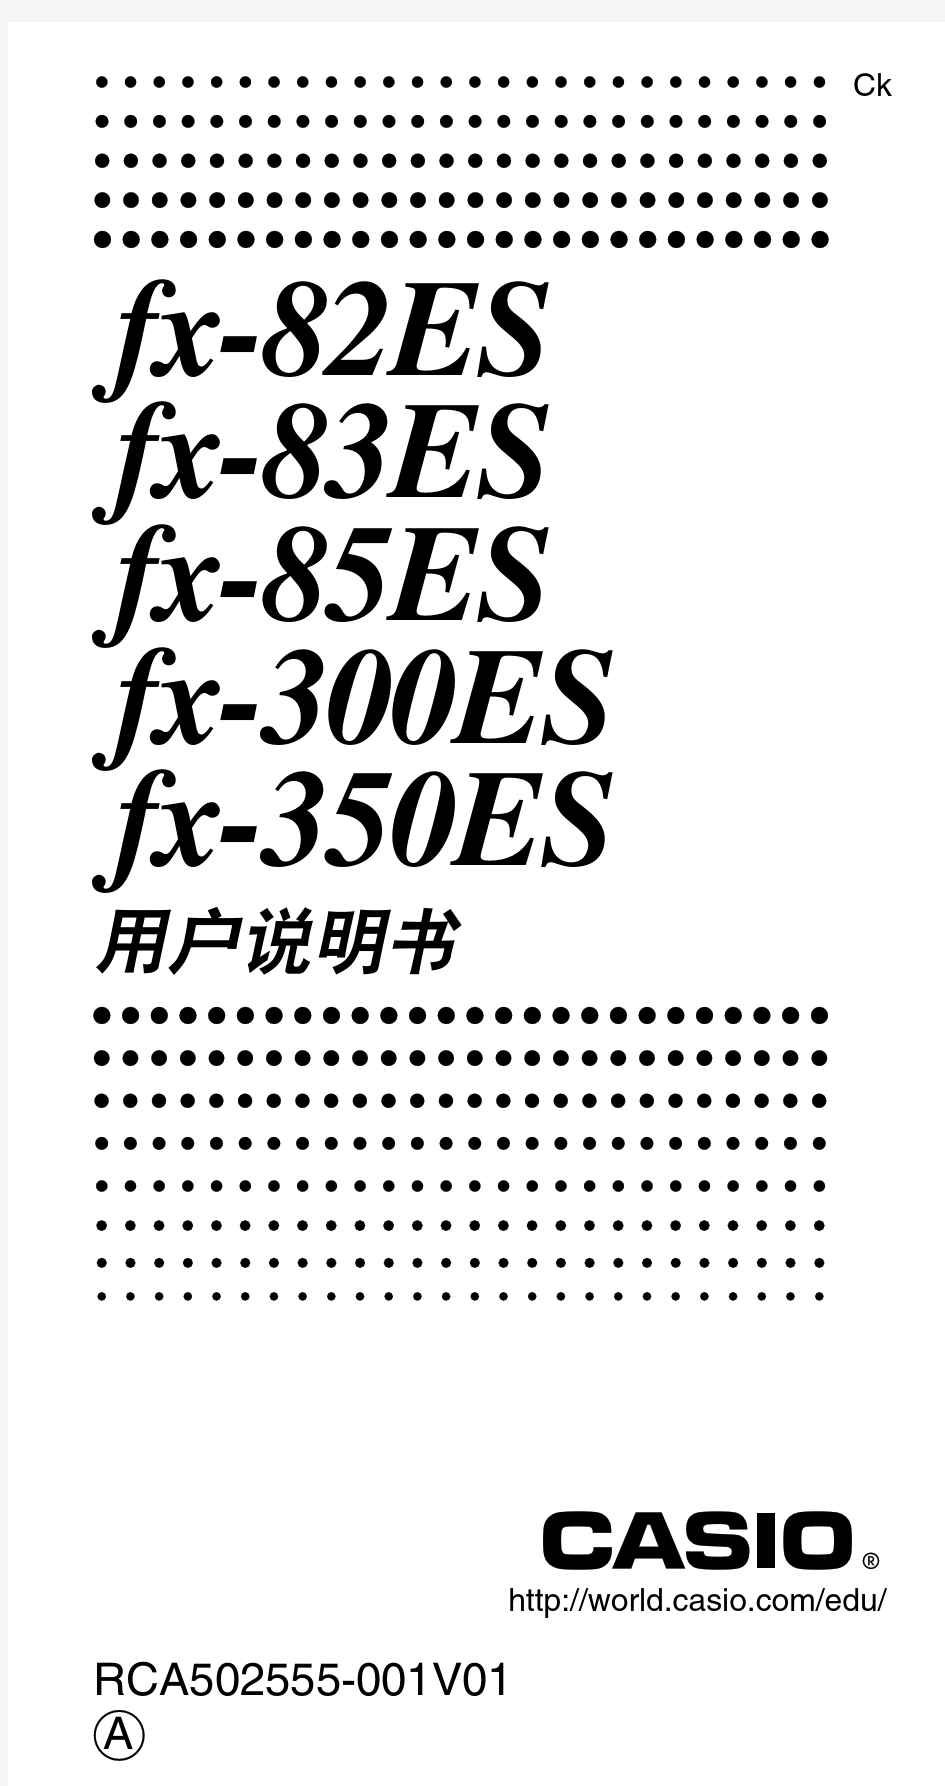 casio计算器fx-82es使用说明.pdf[1]